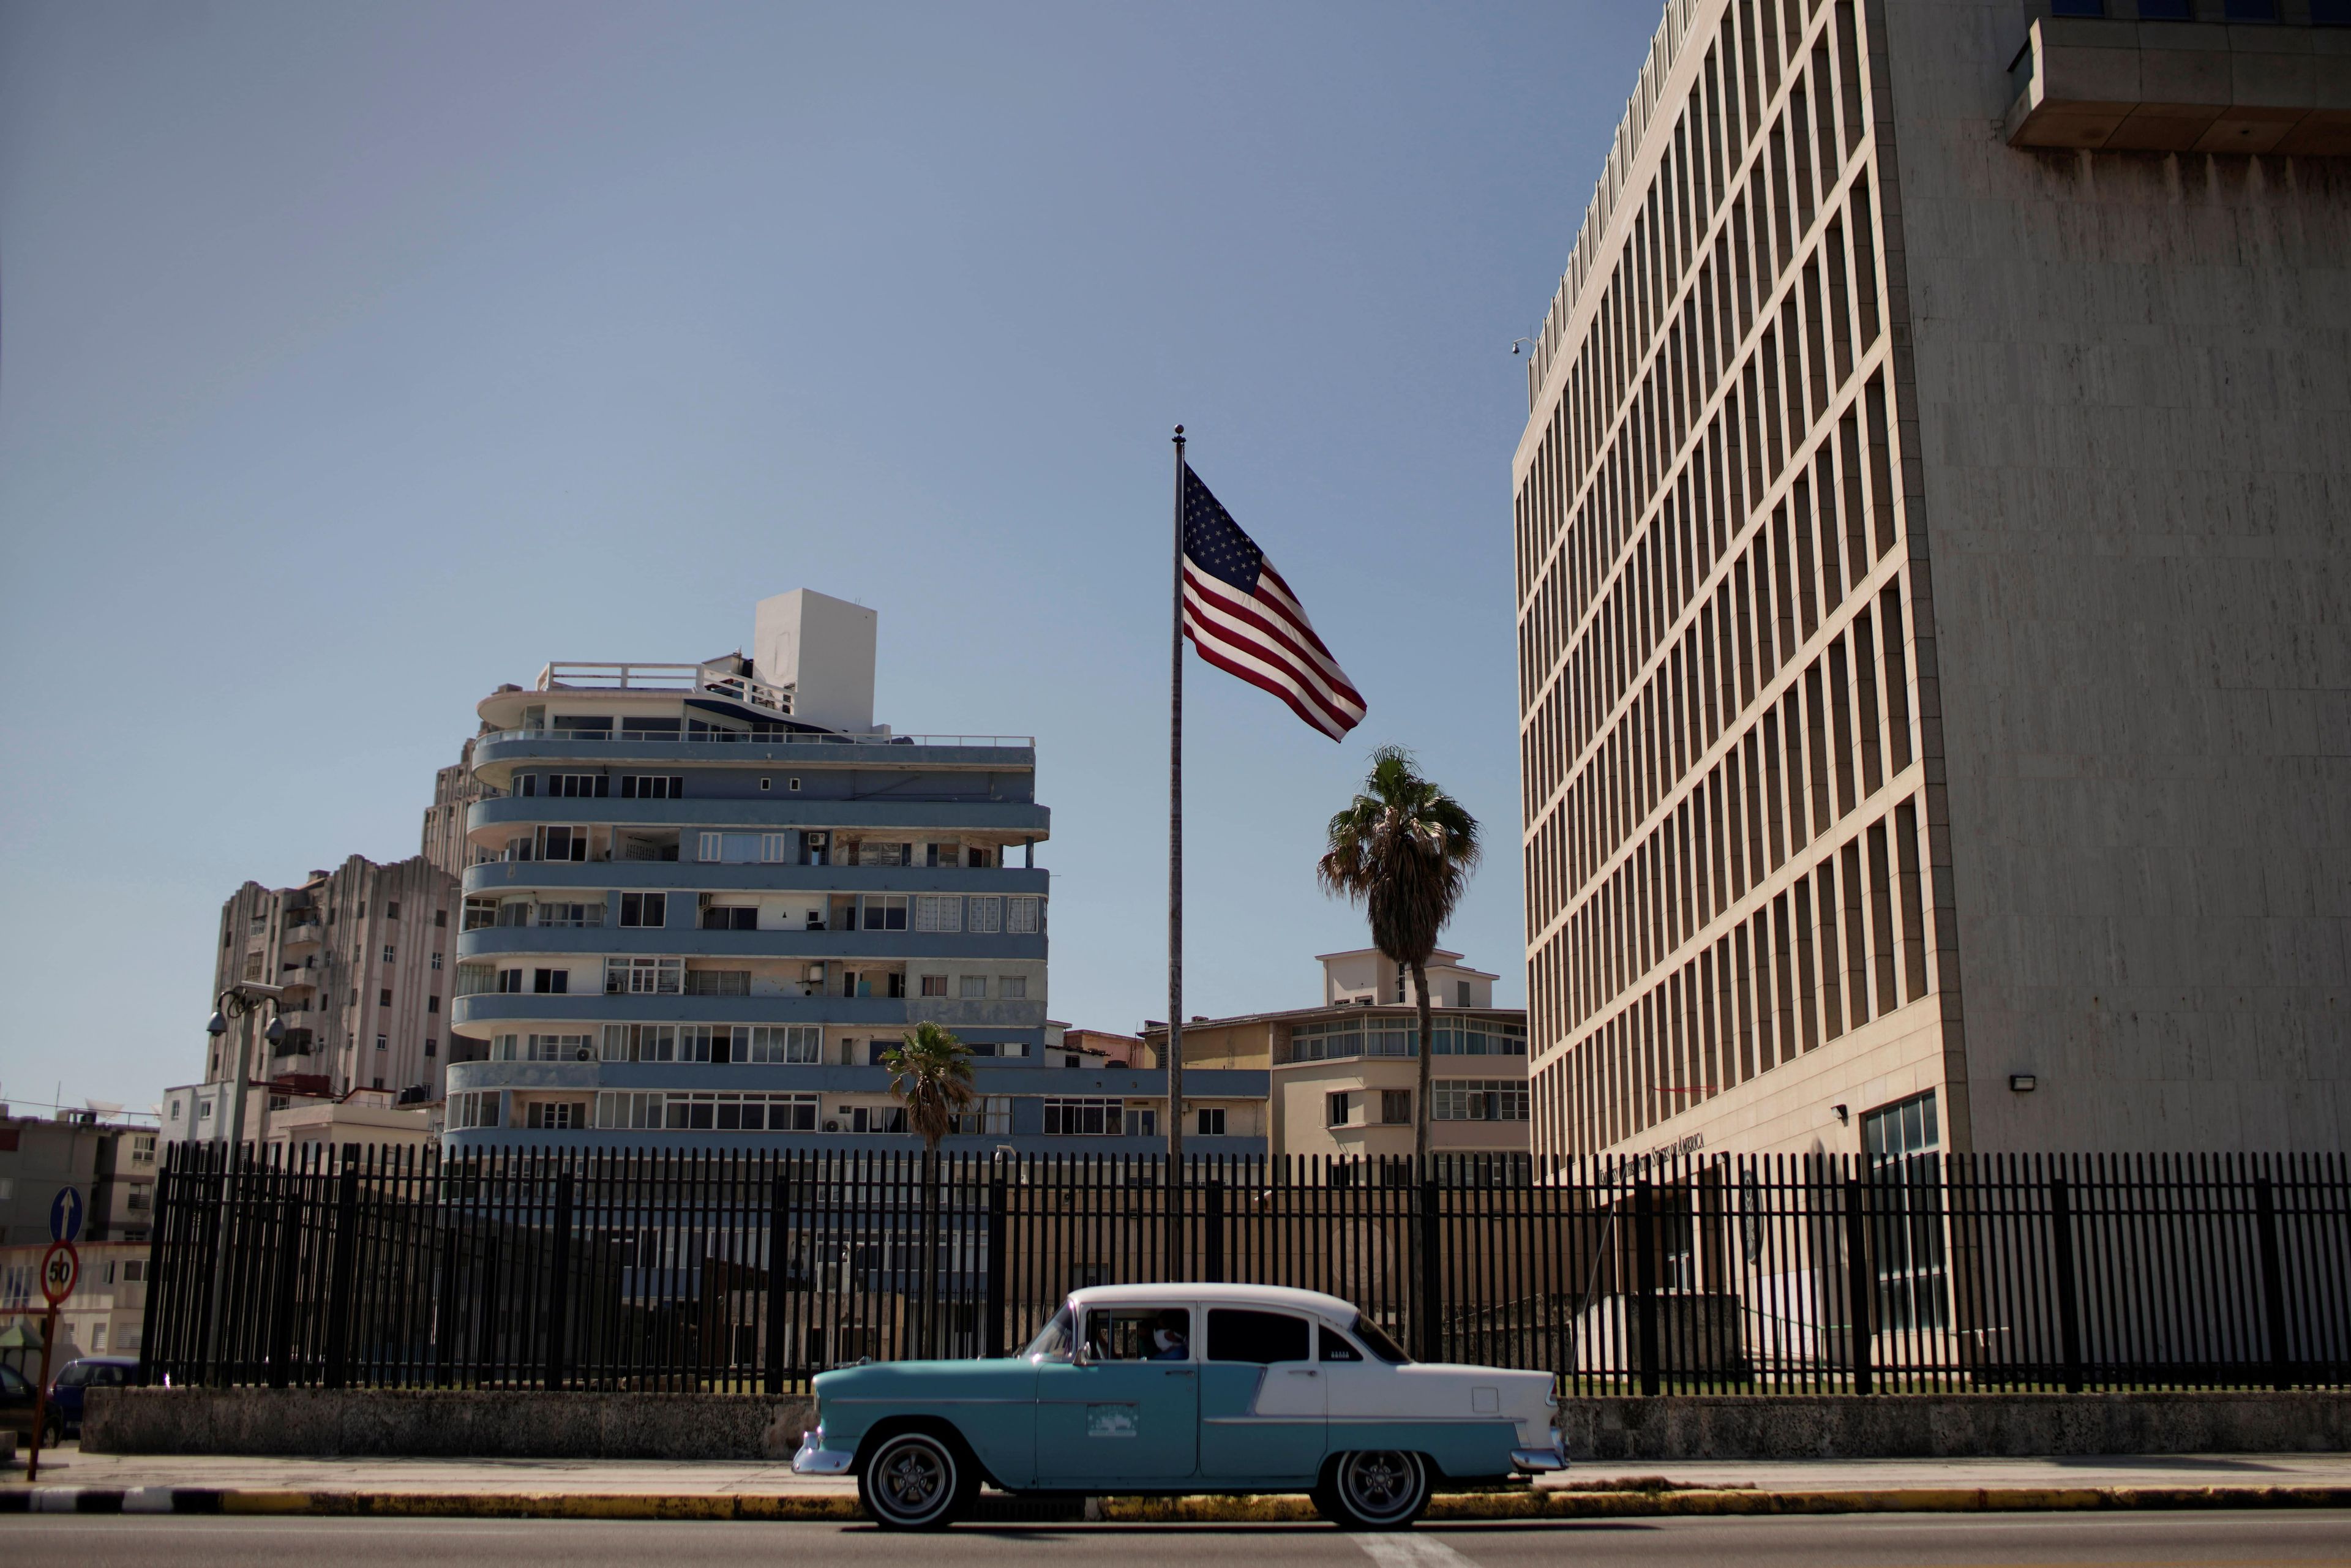 Embajada de Estados Unidos en Cuba, donde se detectaron por primera vez los casos de esta enfermedad